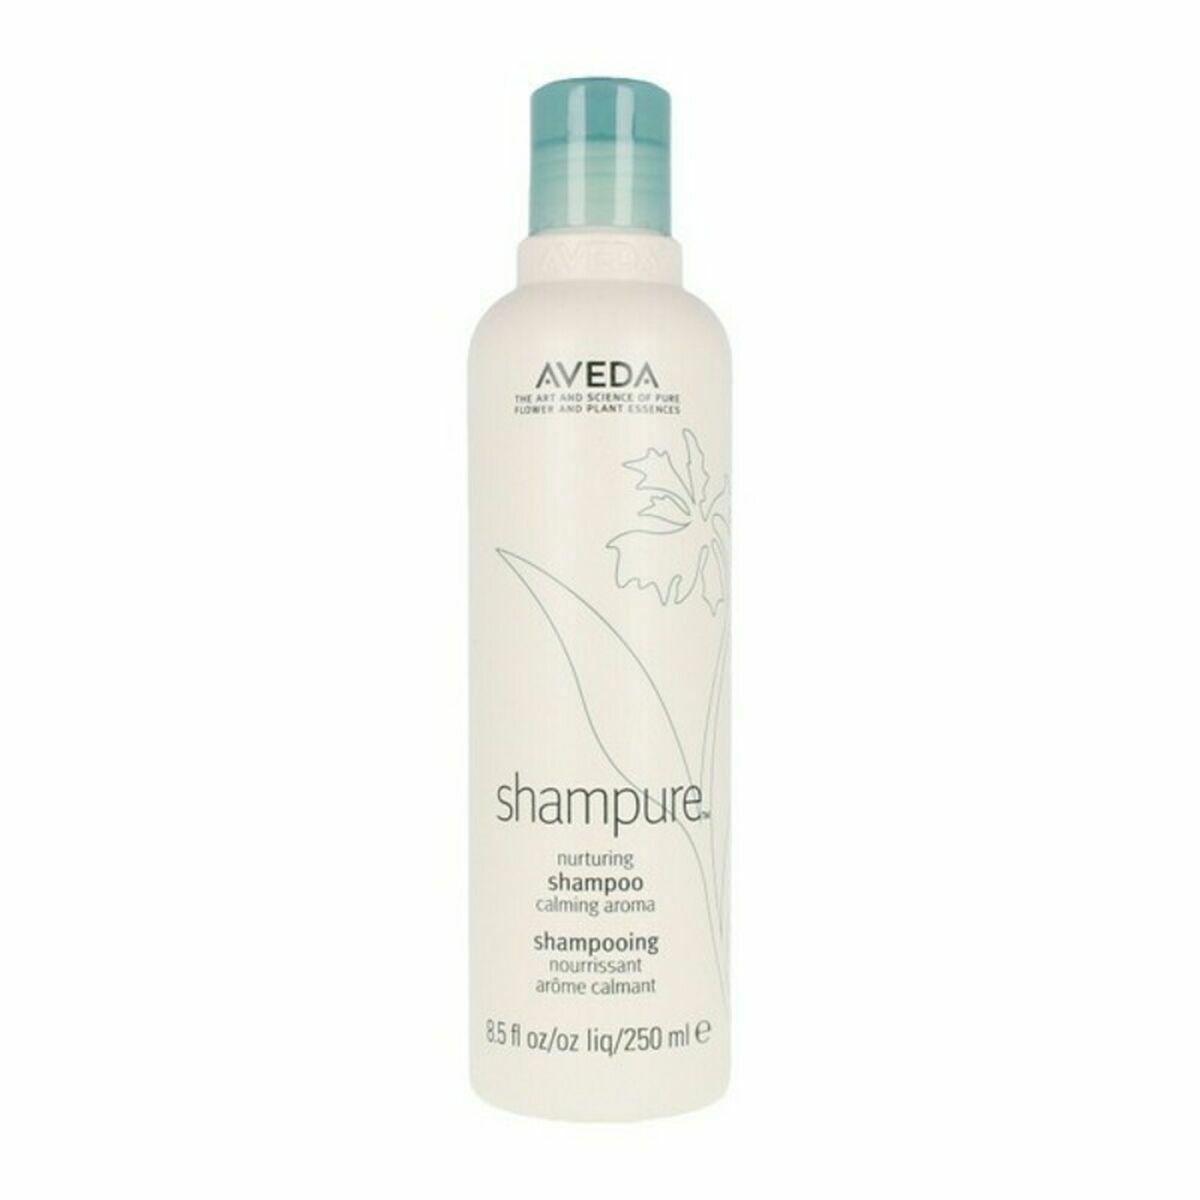 Billede af Nærende shampoo Shampure Aveda (250 ml)